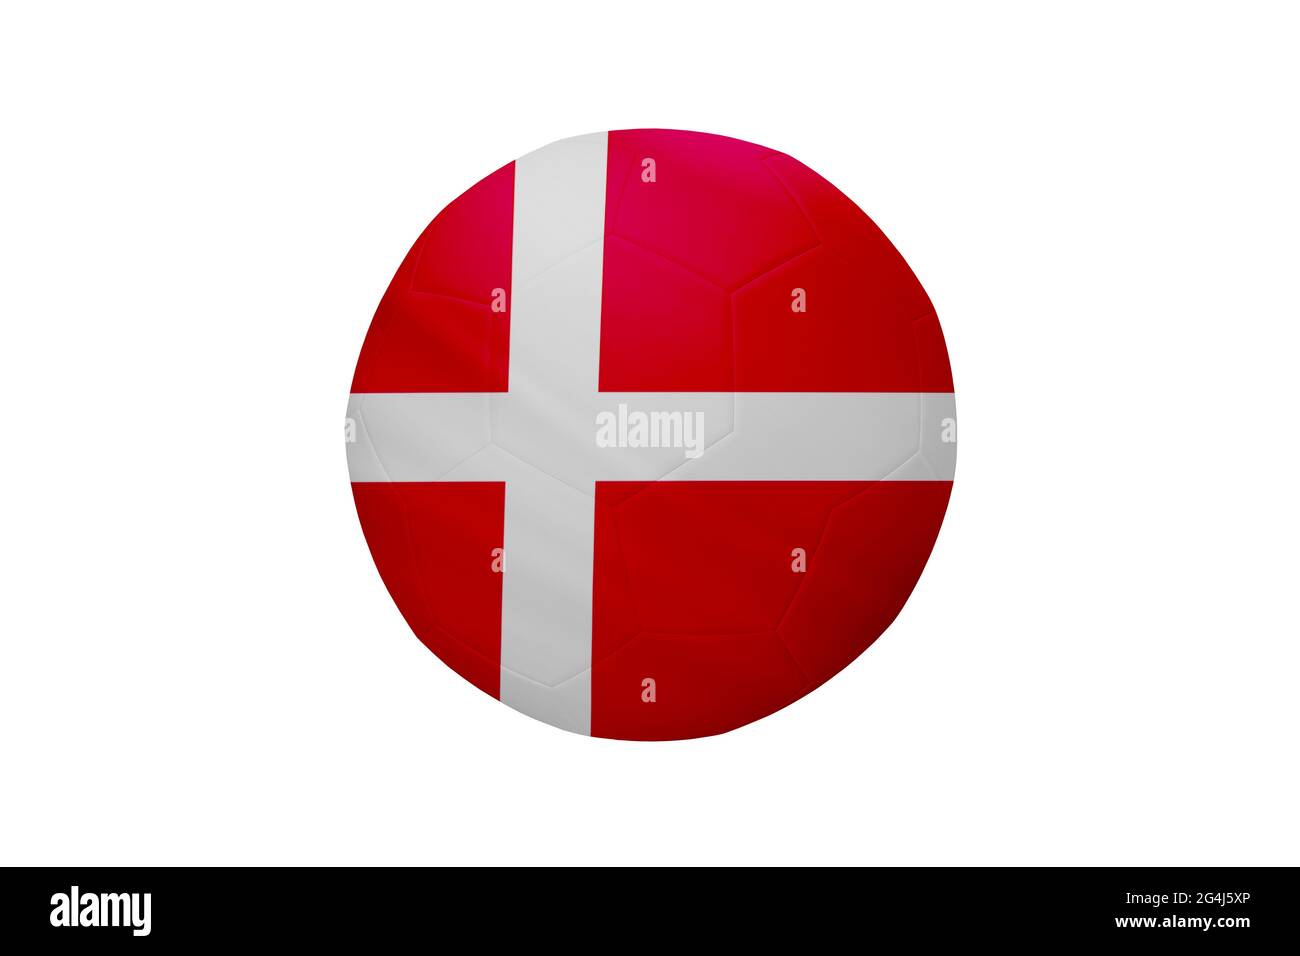 Fußball in den Farben der dänischen Flagge isoliert auf weißem Hintergrund. In einem konzeptionellen Meisterschaftsbild, das Dänemark unterstützt. Stockfoto